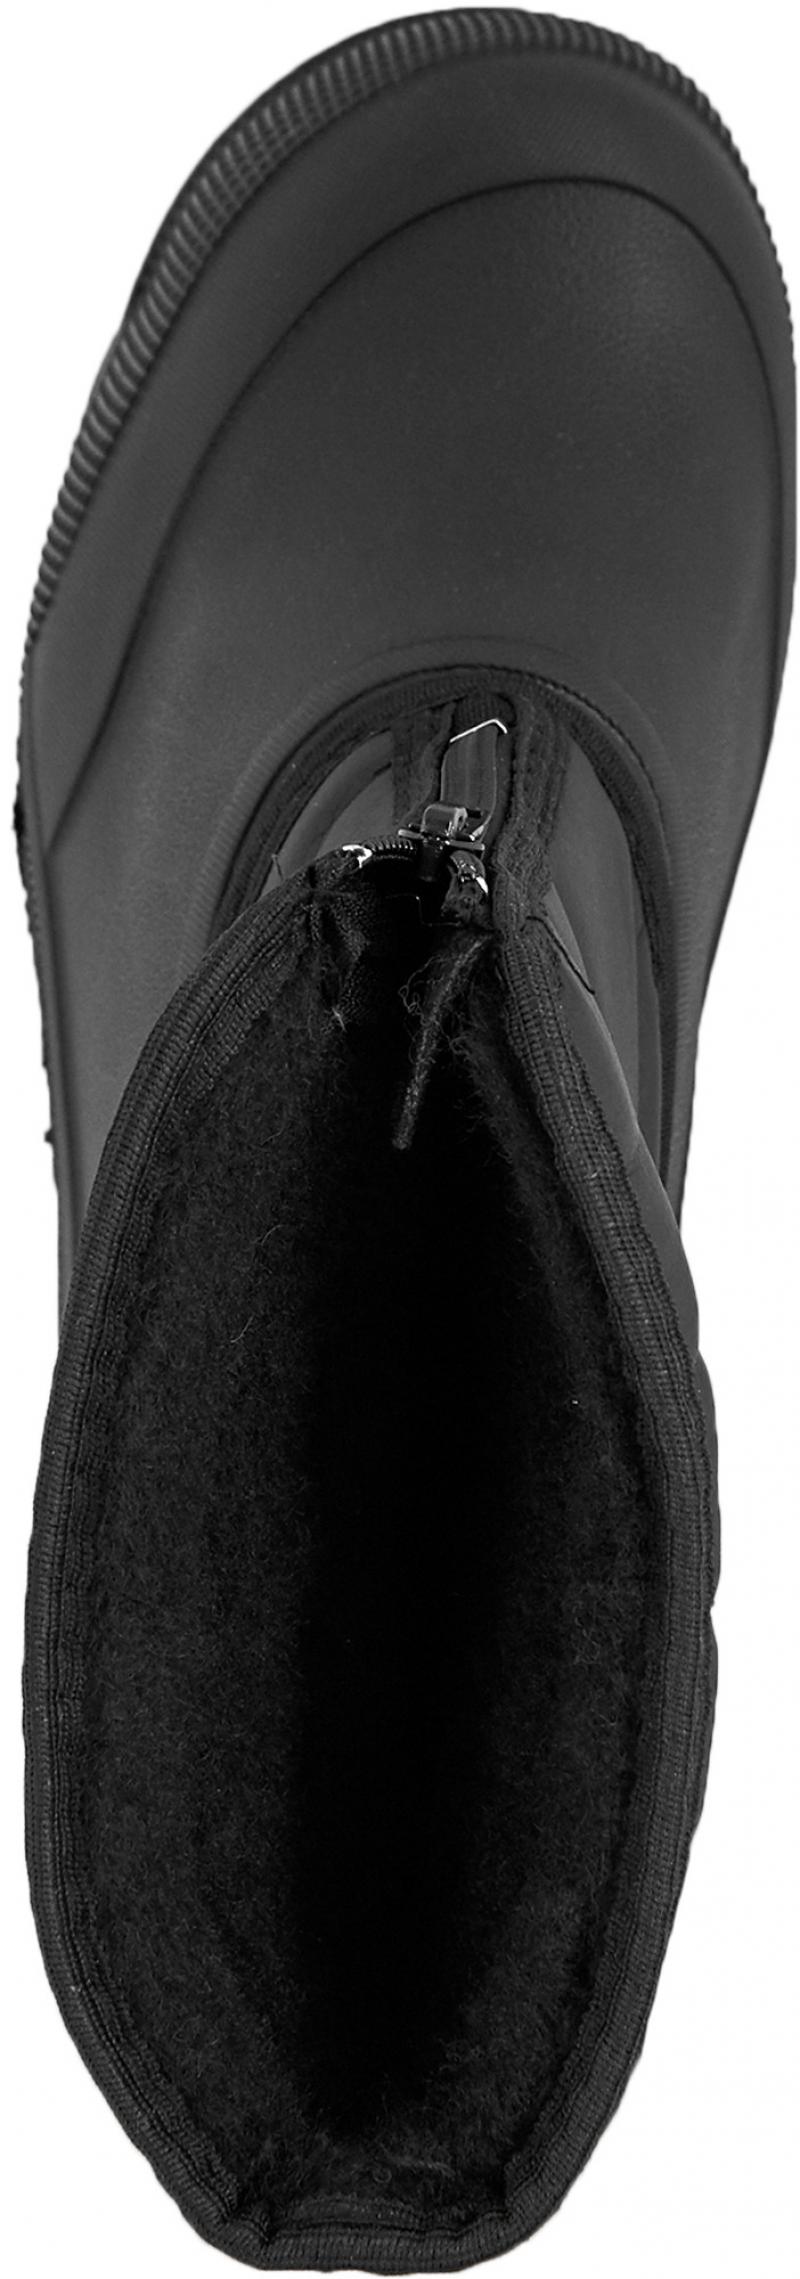 Сапоги мужские М-018 размер 45 цвет чёрный